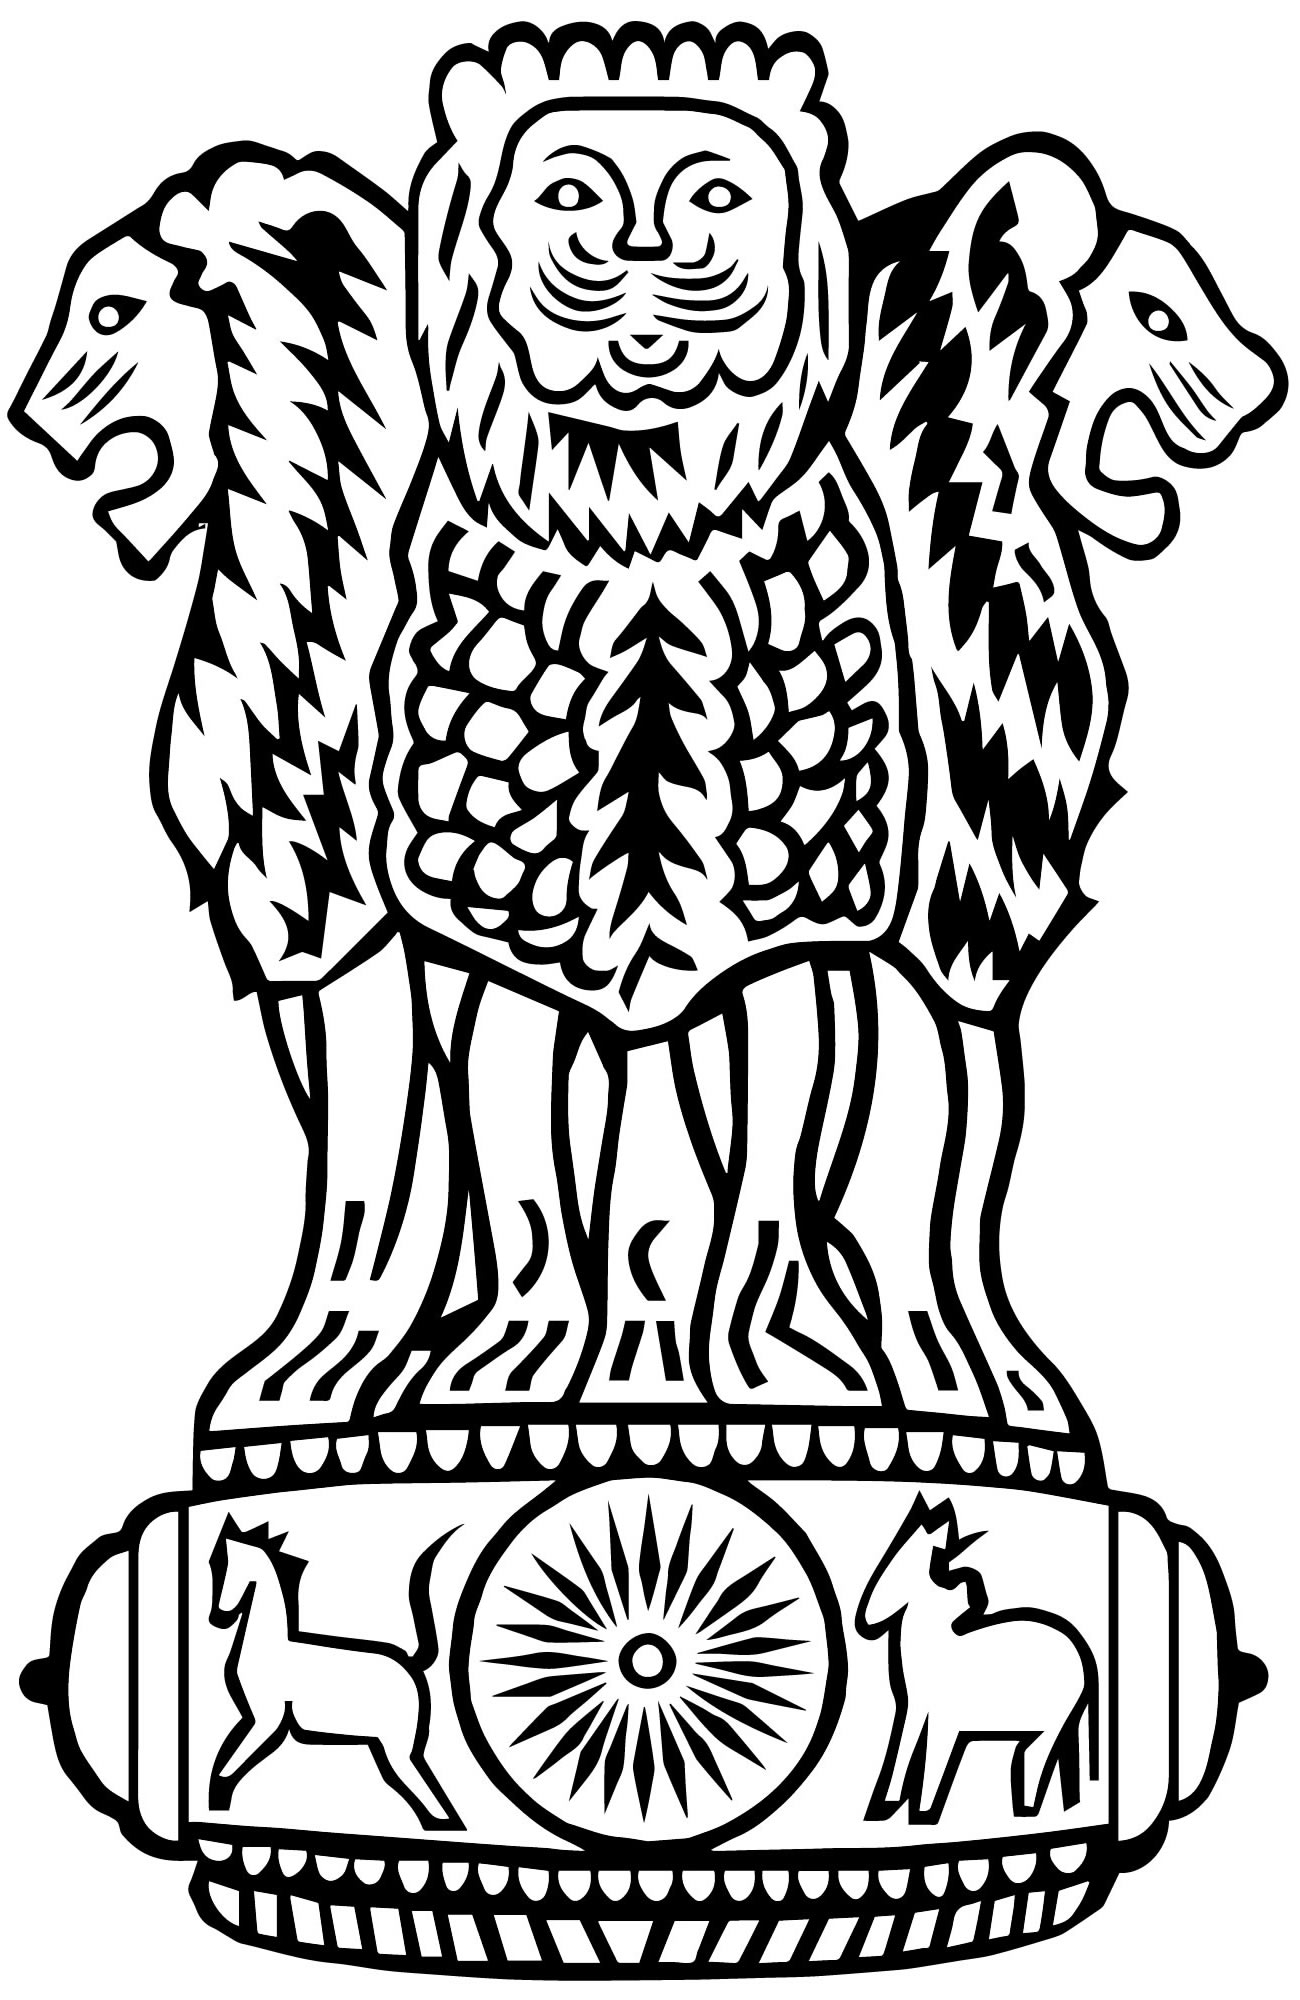 Герб Индии раскраска для детей